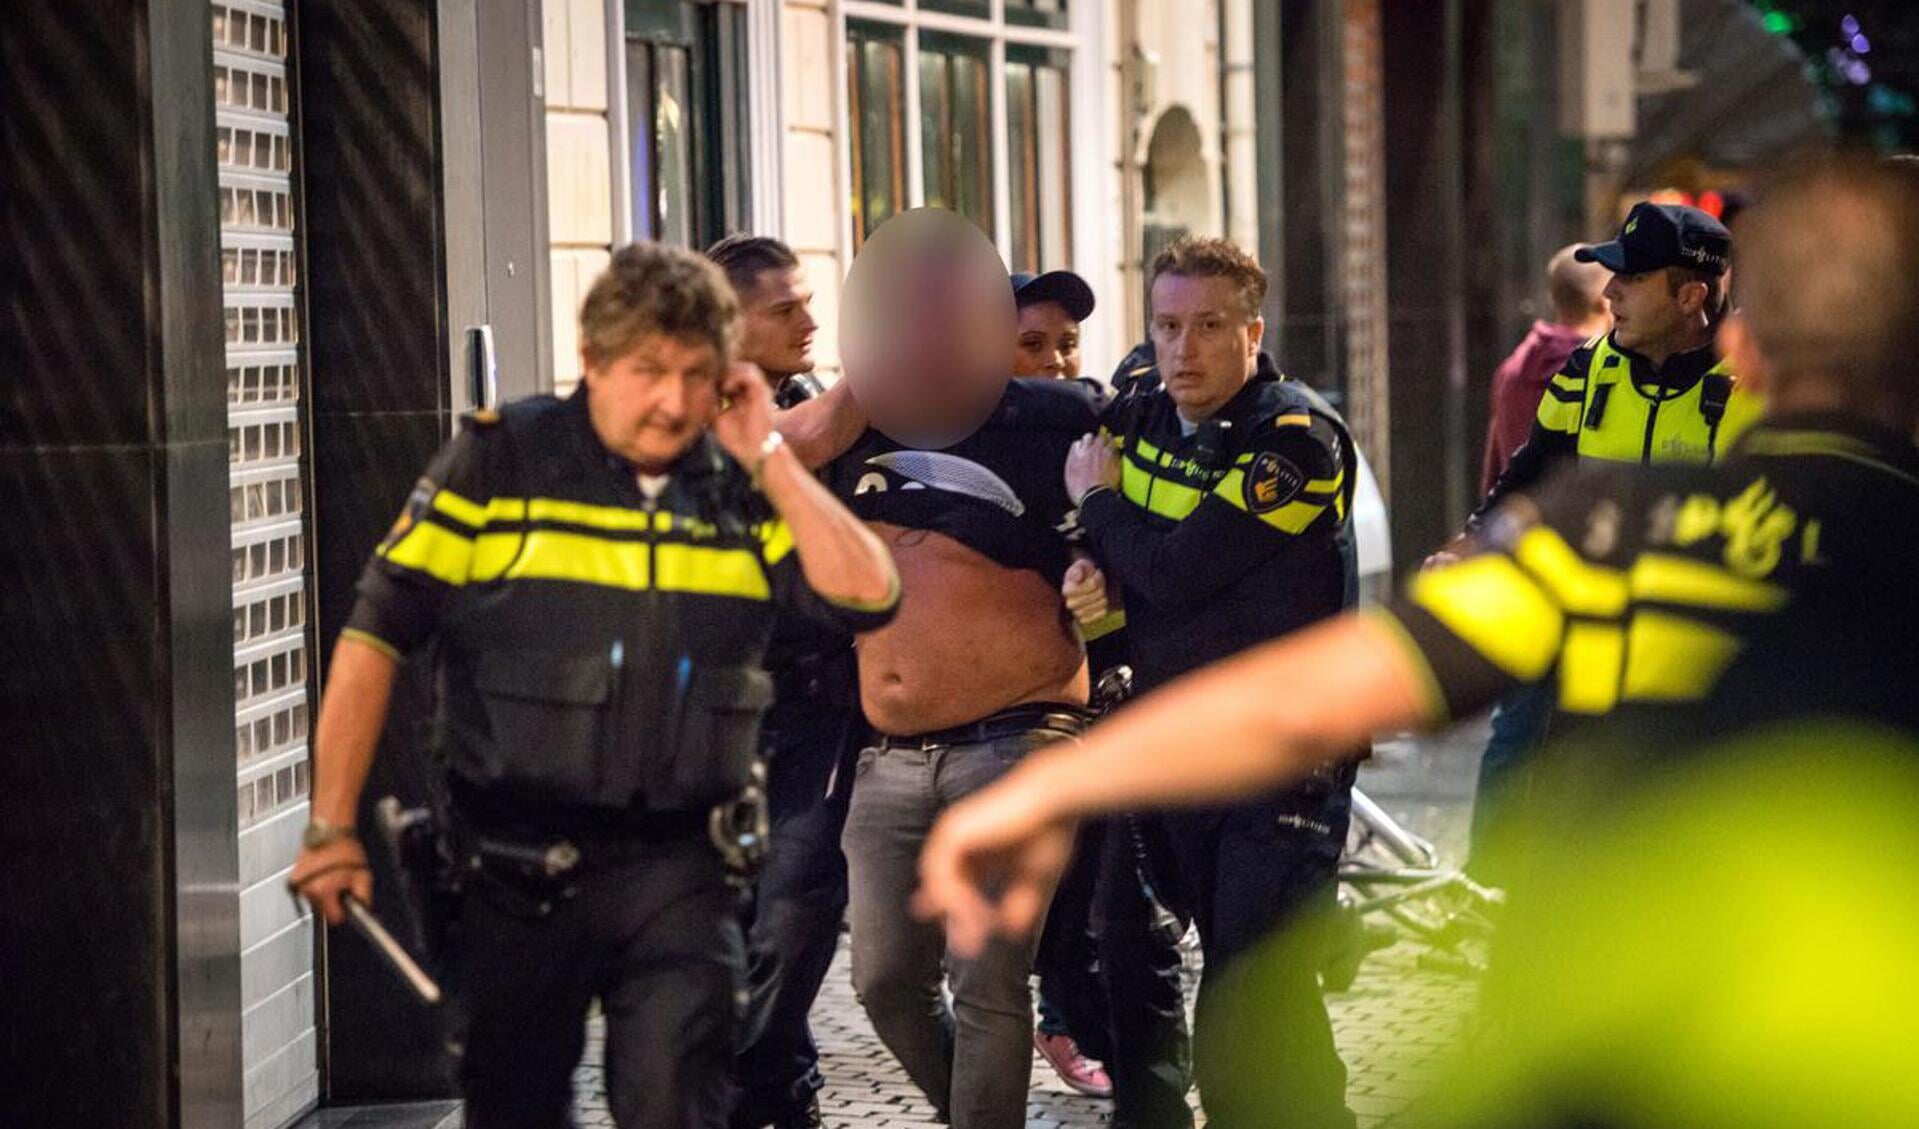 Ten minste twee mannen werden aangehouden na een vechtpartij in het Bredase centrum.